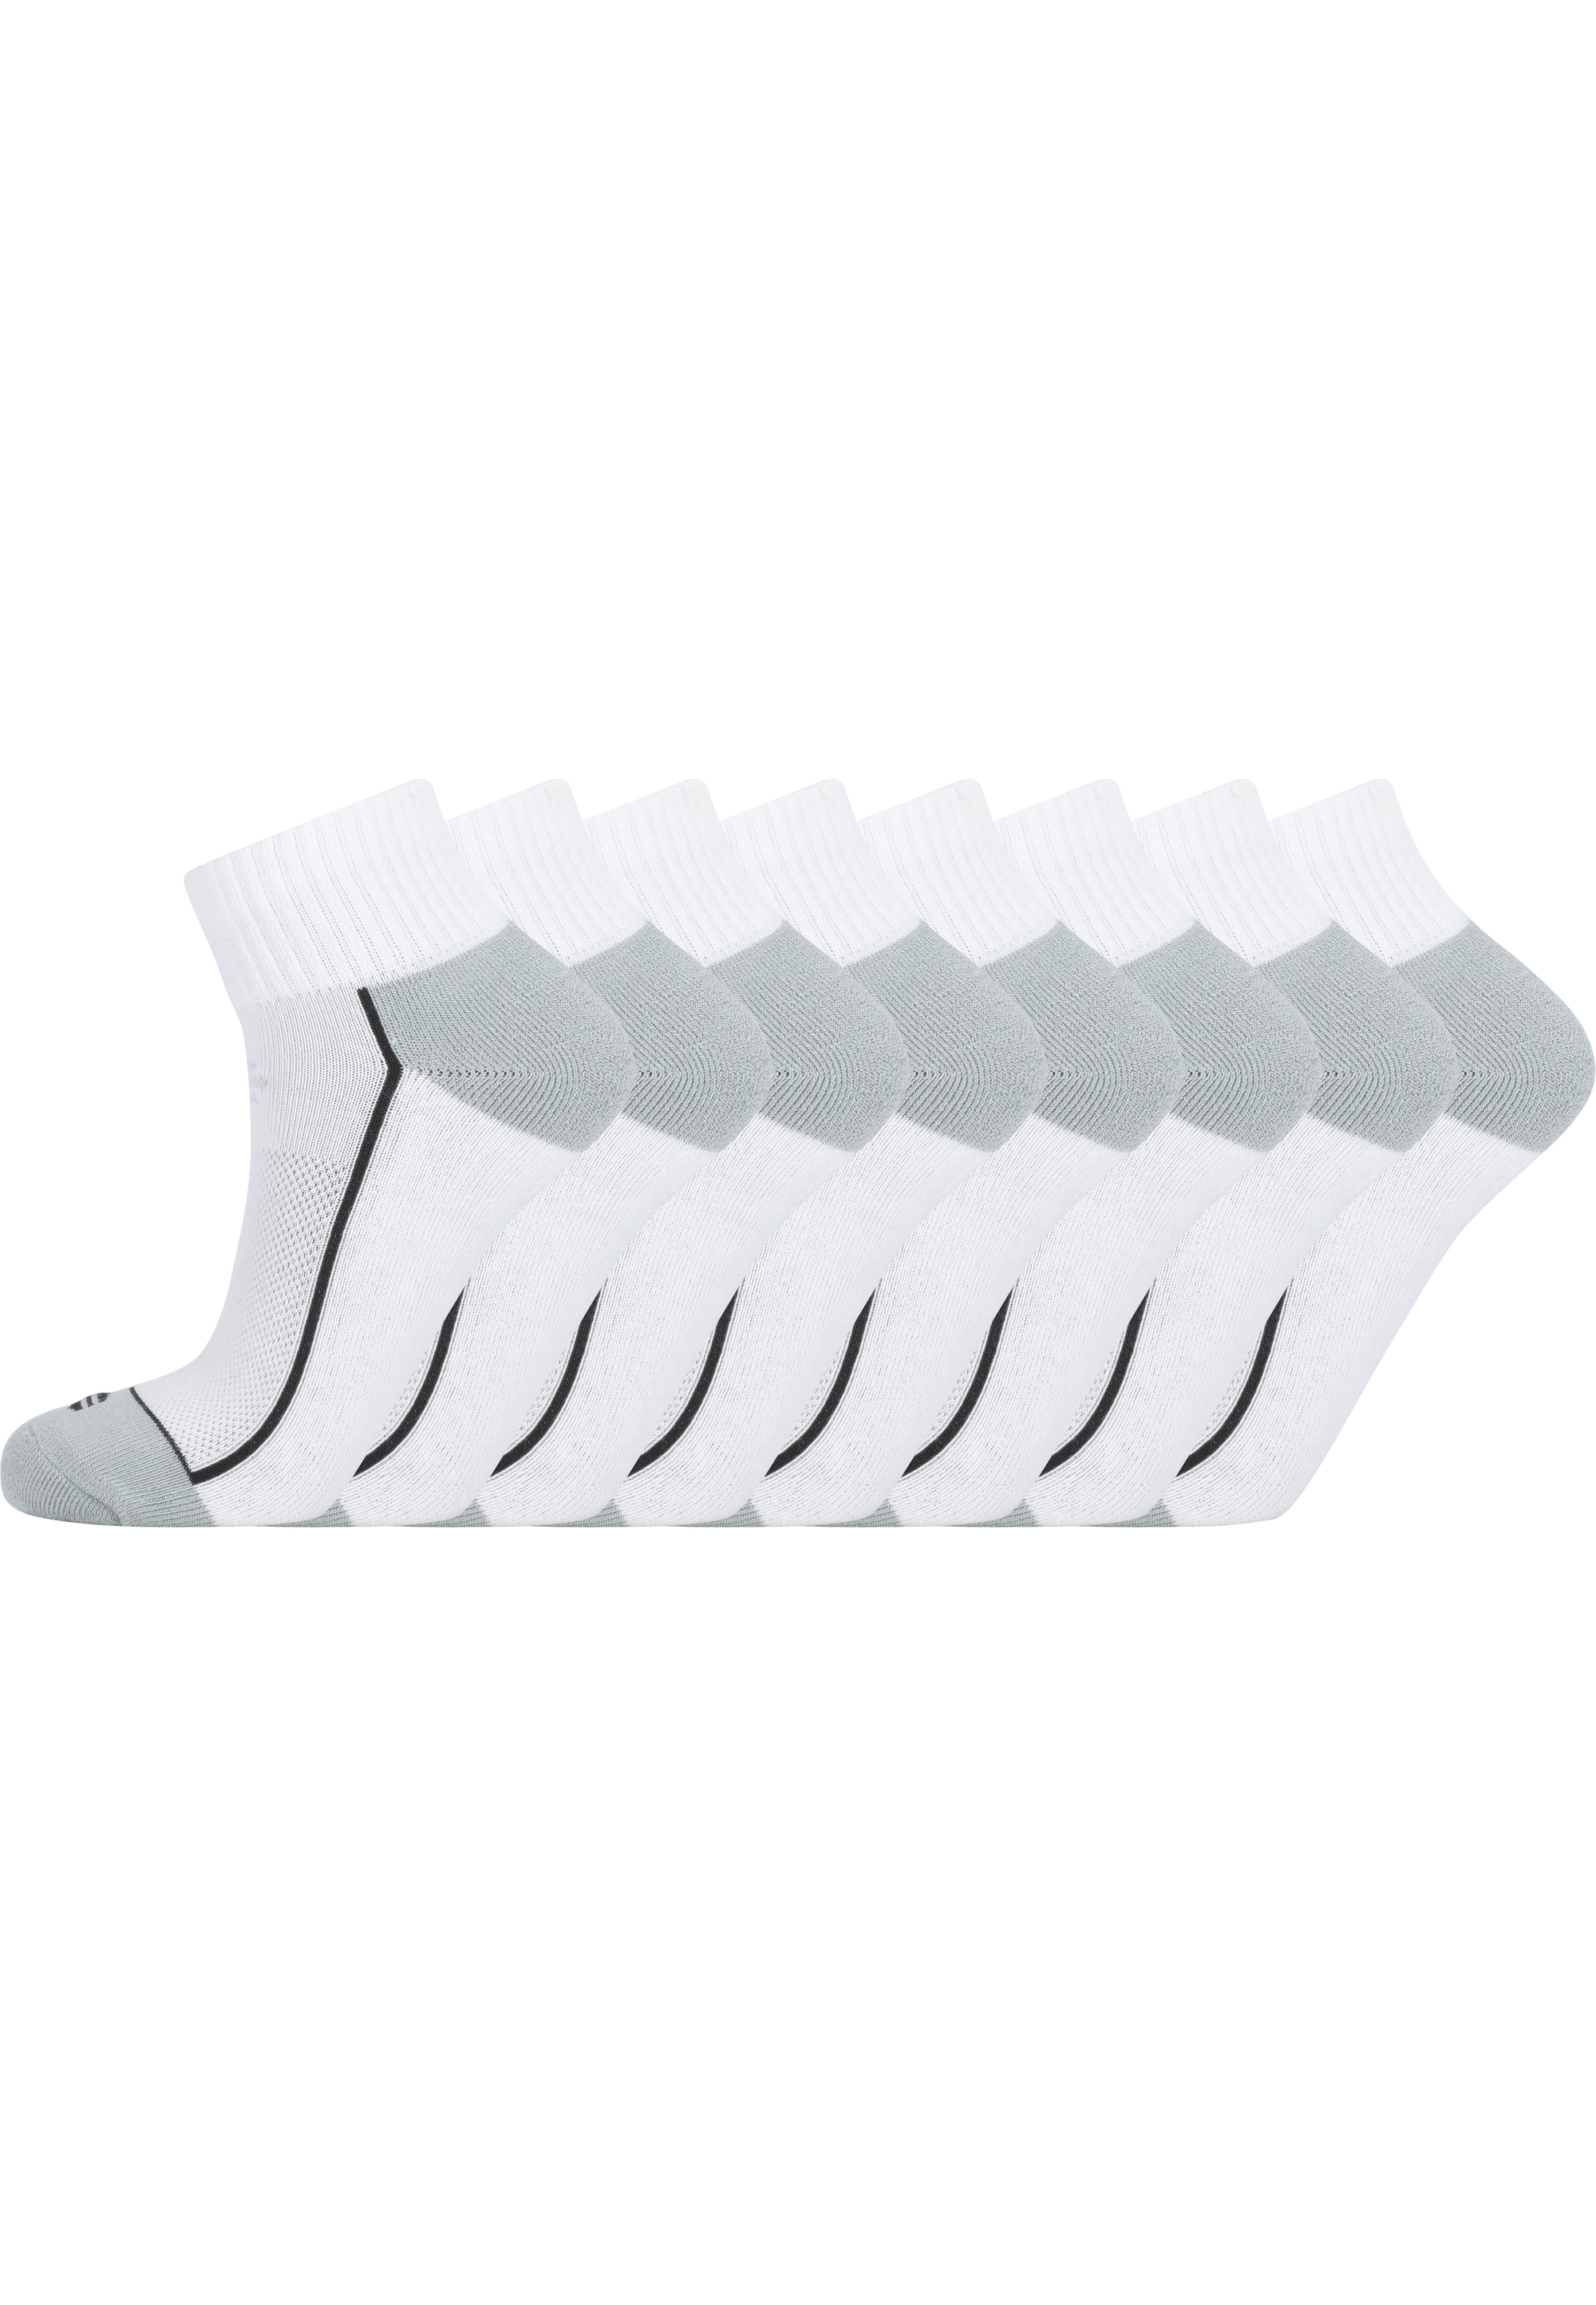 ENDURANCE Socken »Avery«, (8 Paar), in atmungsaktiver Qualität